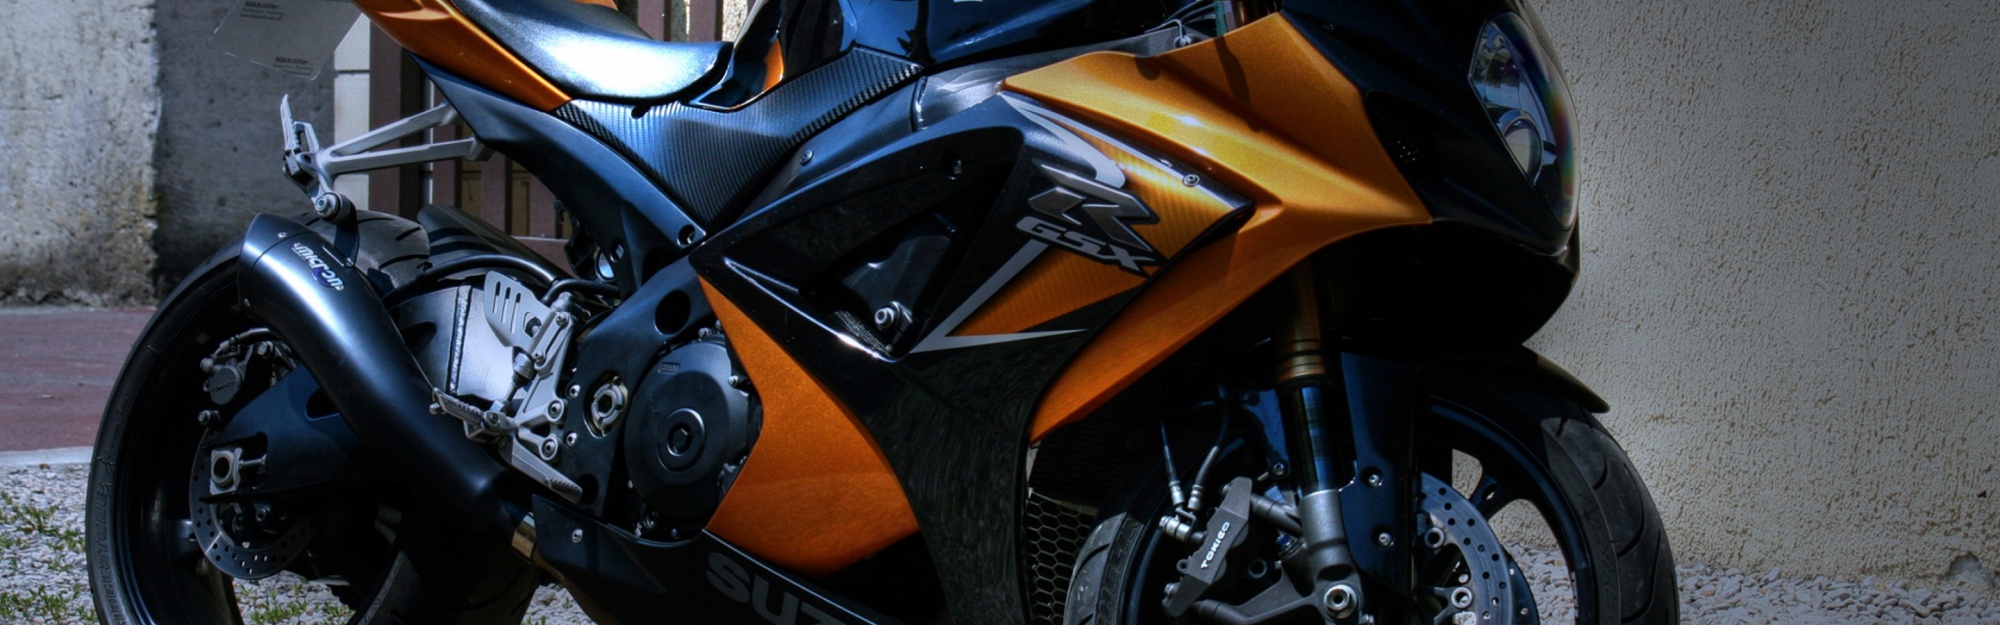 Suzuki GSXR 1100 Motorbike